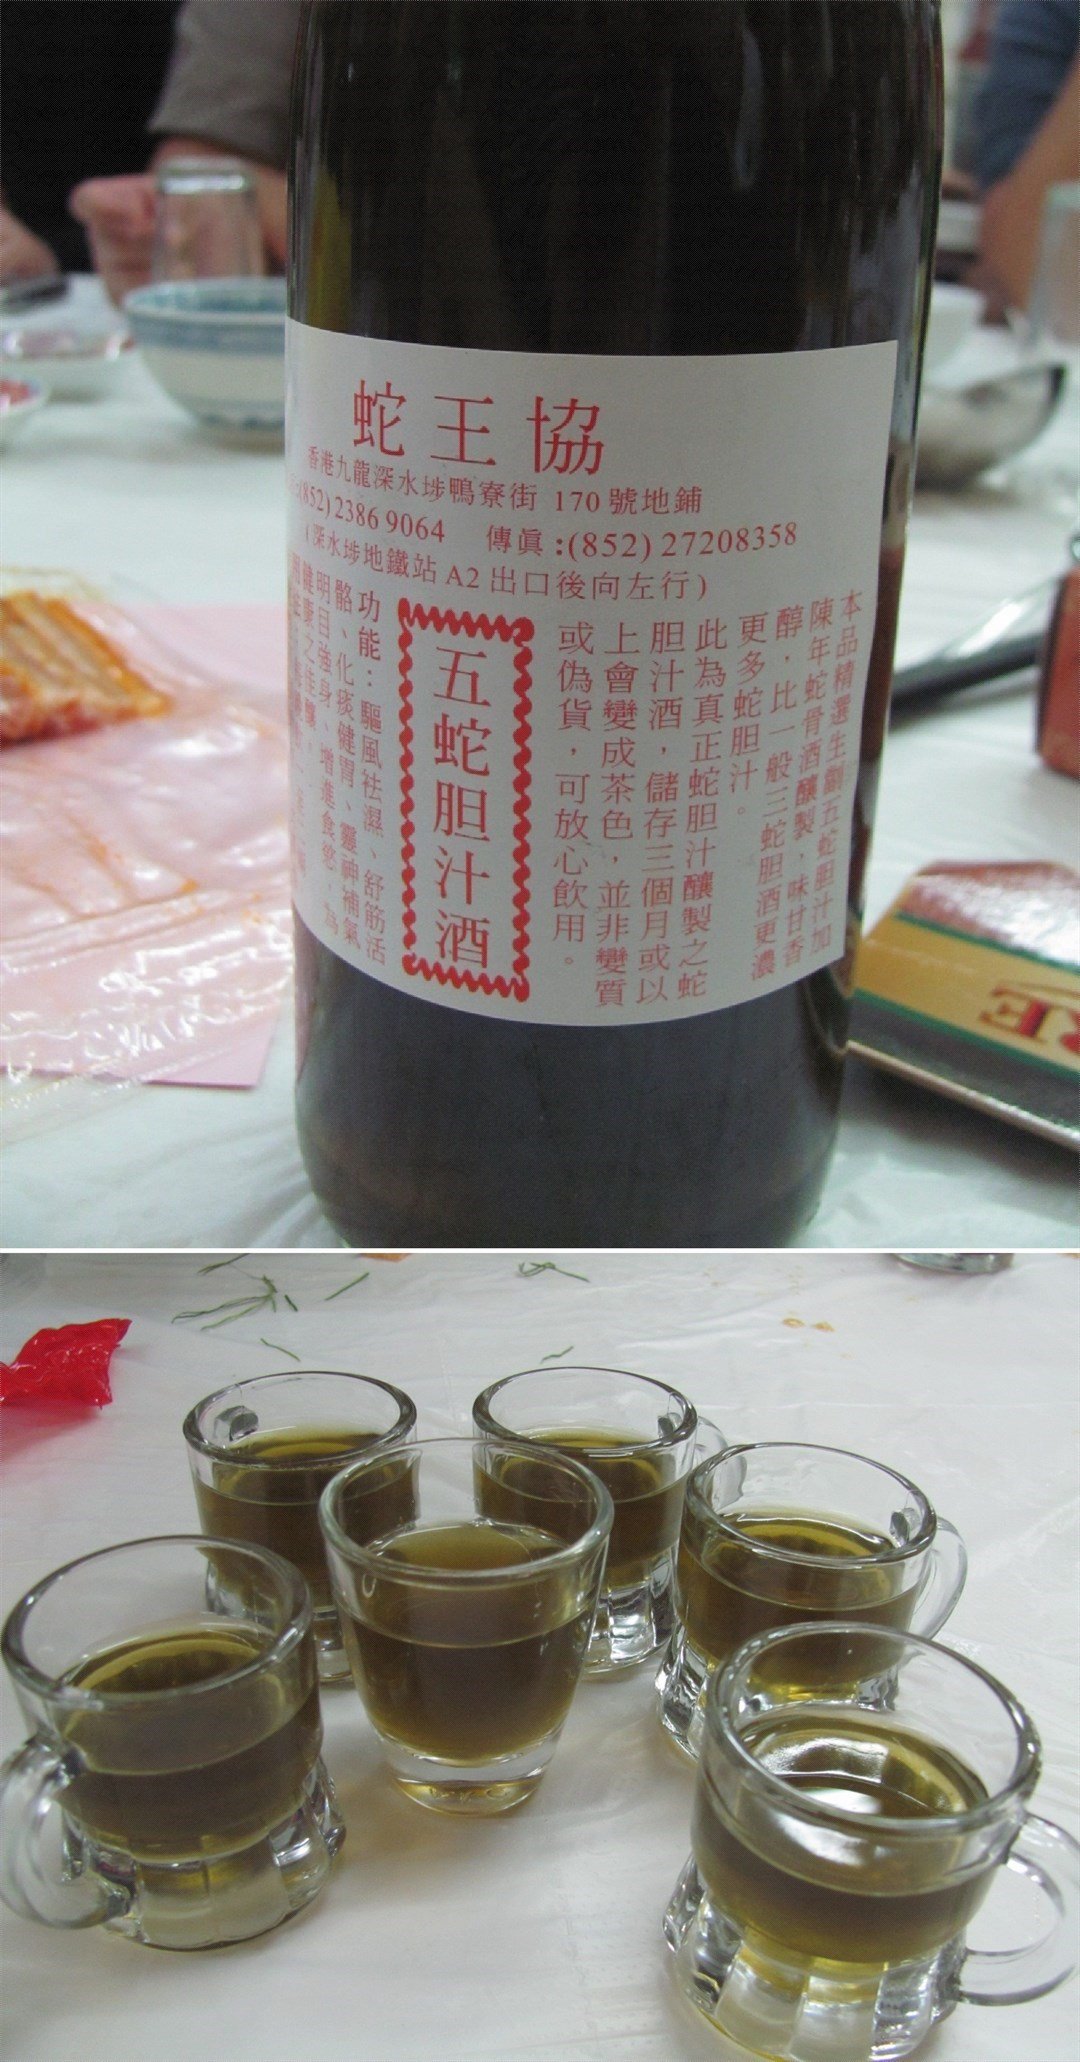 蛇酒於我而言不太好喝 不过它通常都是功能性的 香港深水埗的蛇王协 Openrice 香港开饭喇